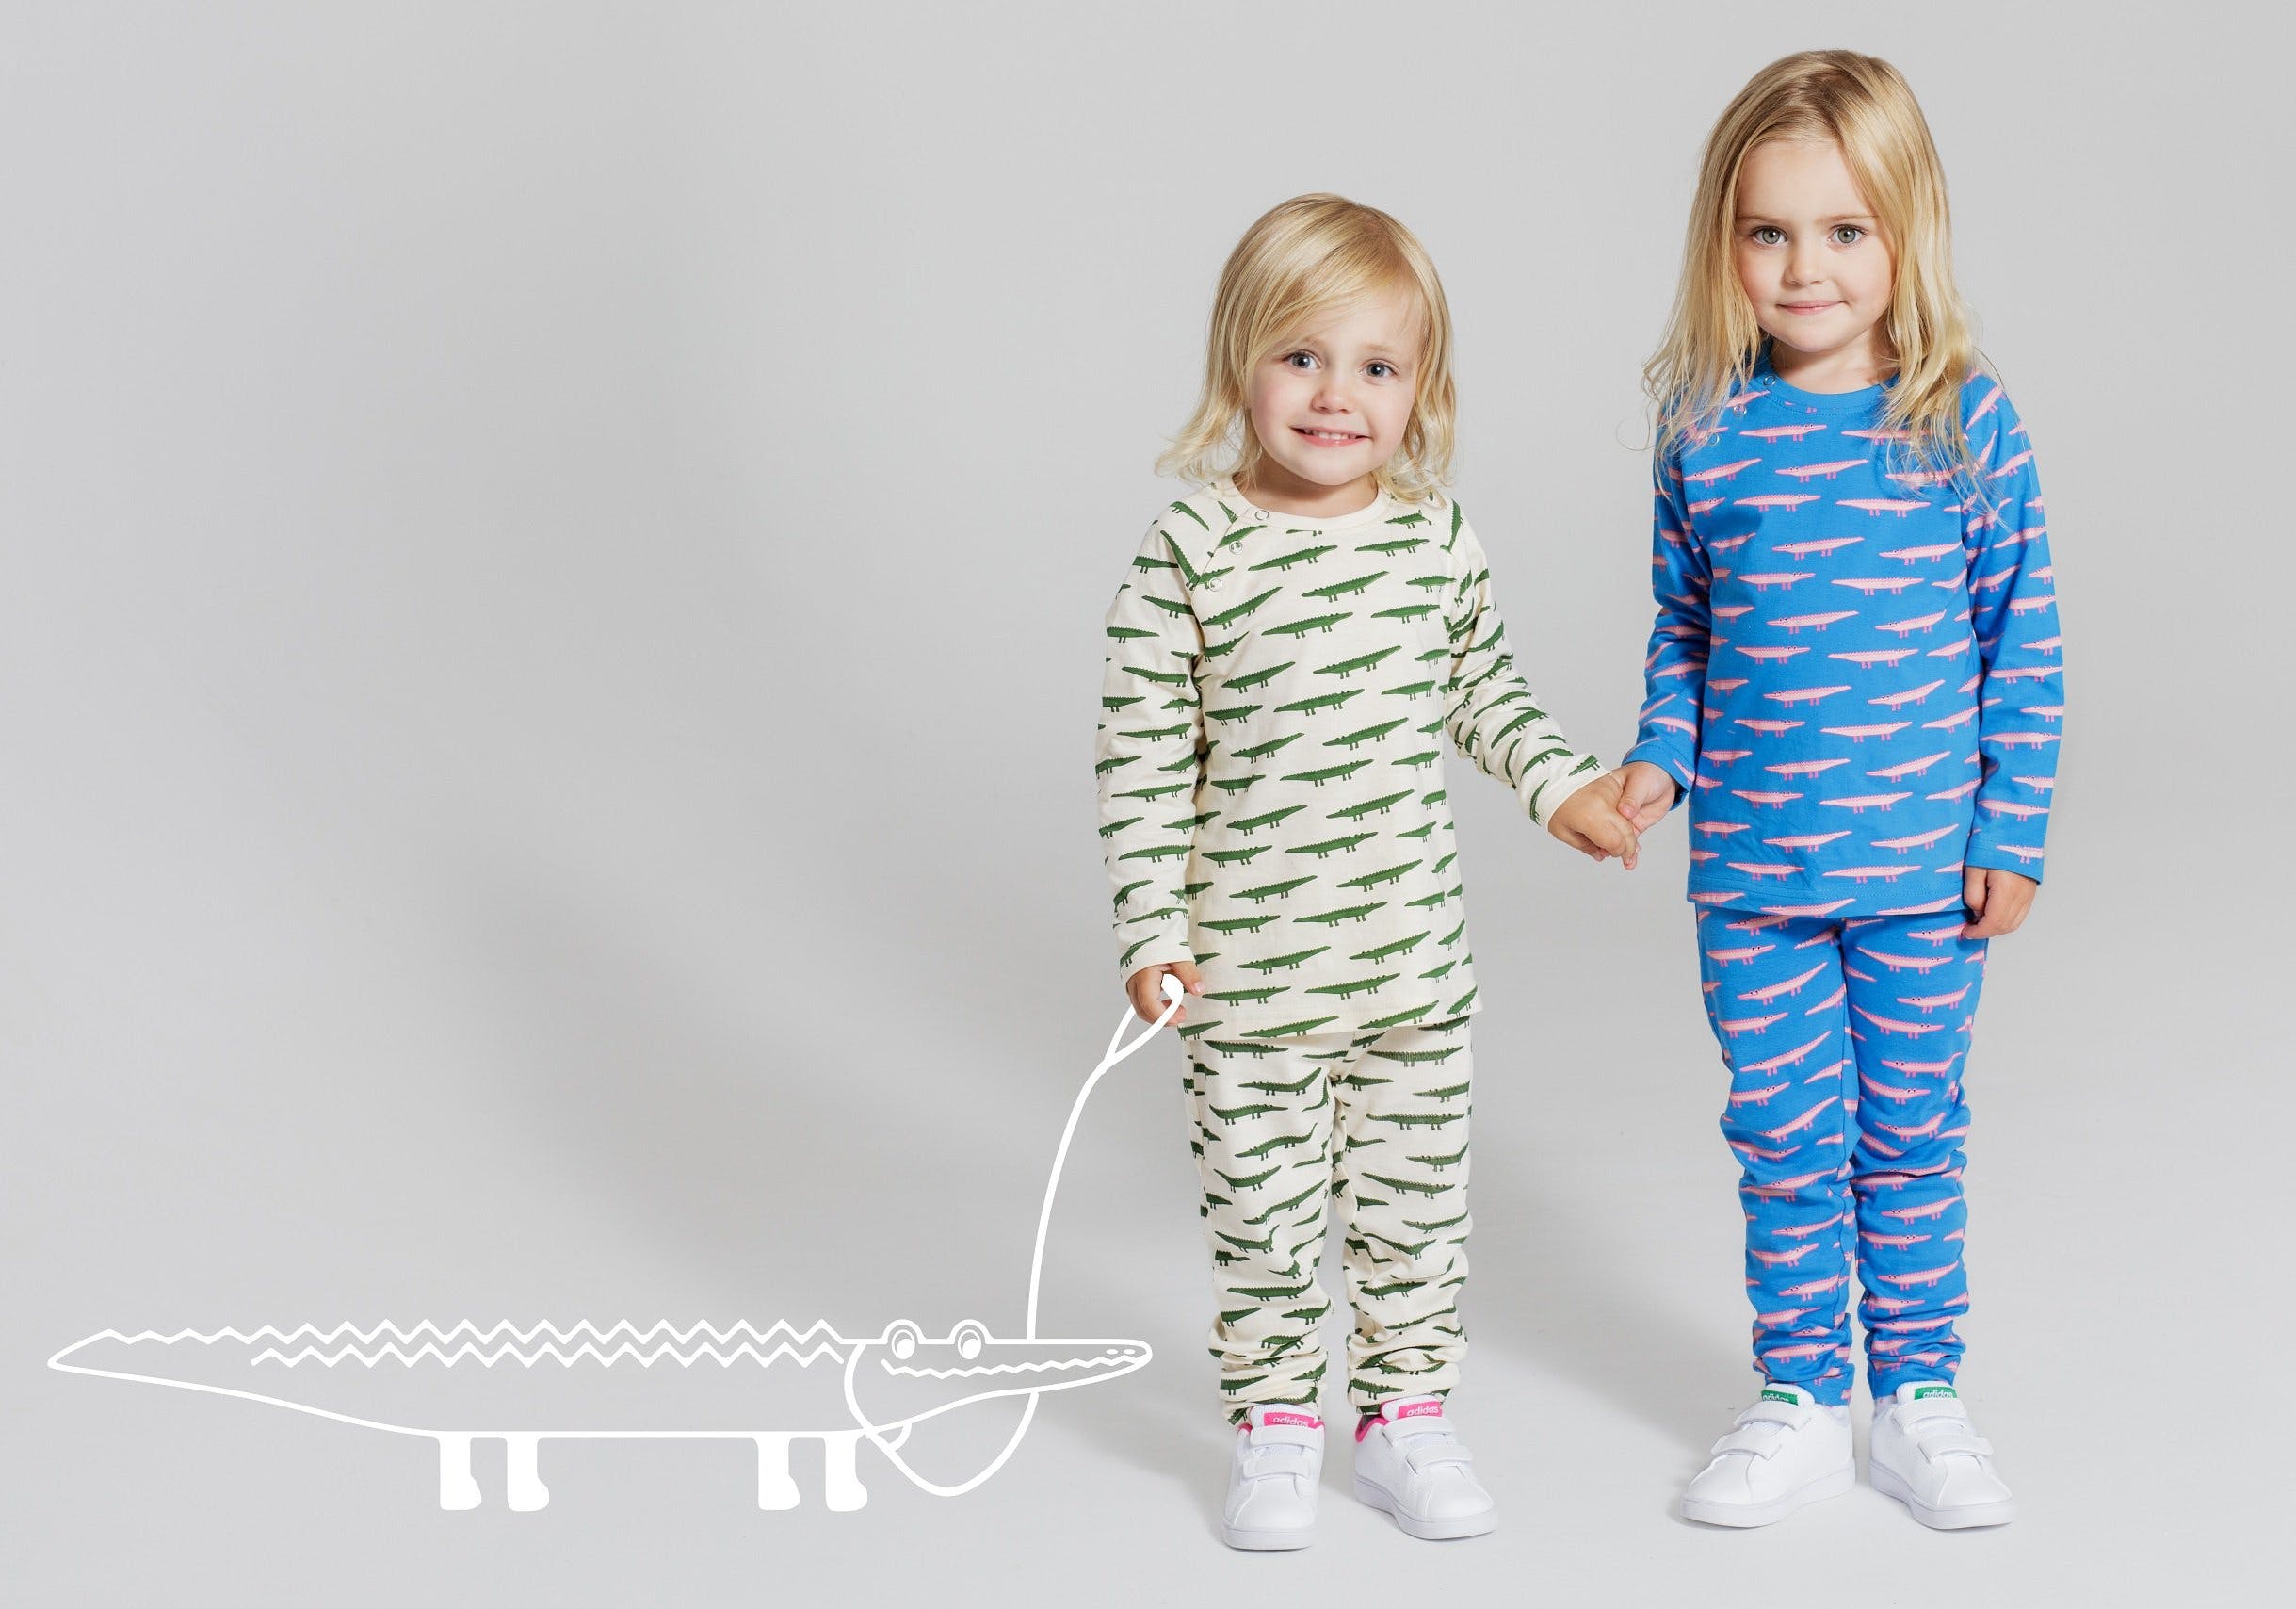 Spana in Pollops nya barnkläder med fina mönster Image